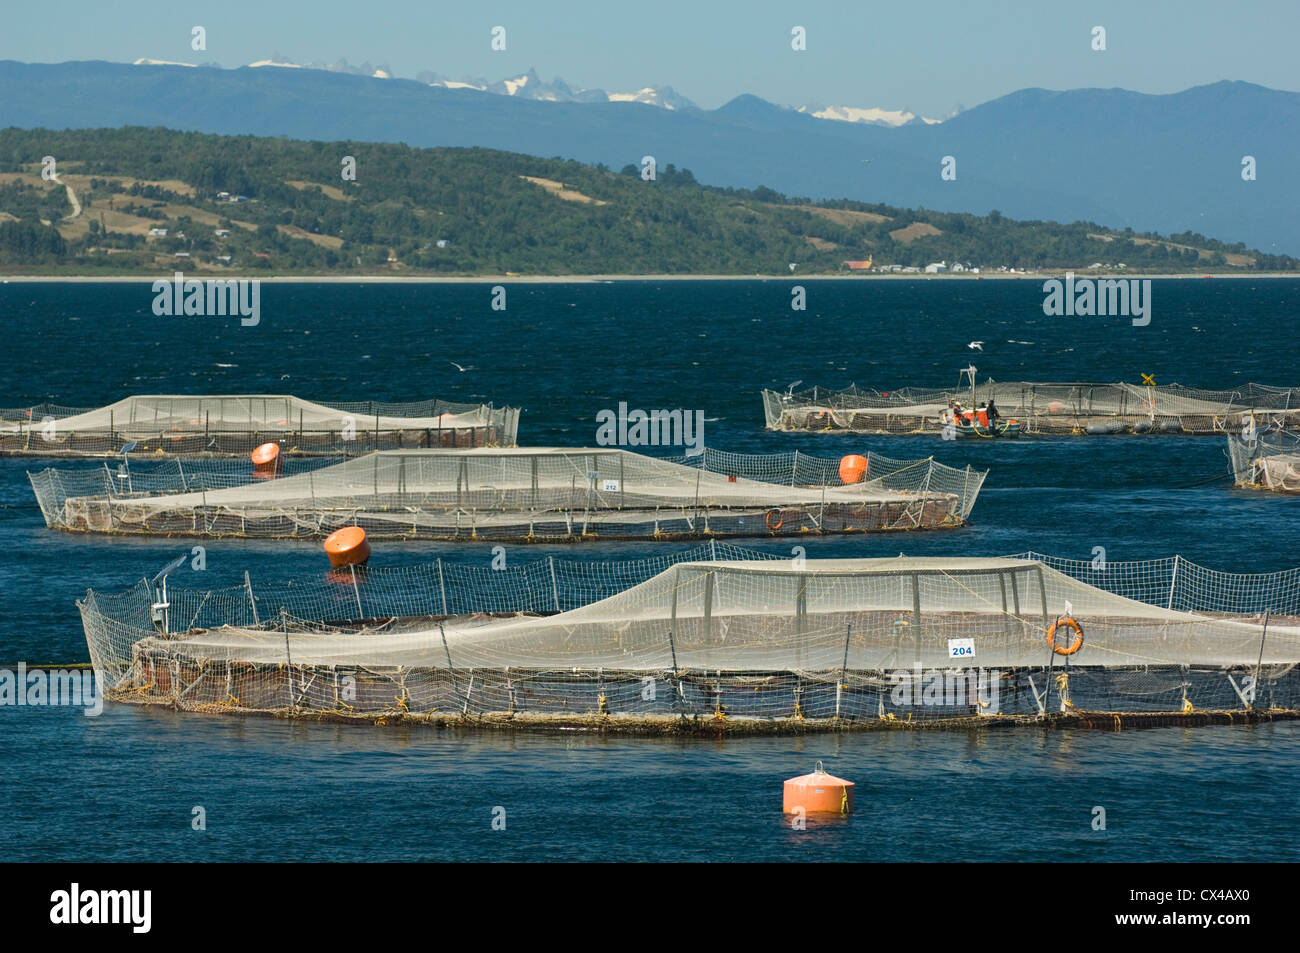 Aquaculture : salmon farm, Marine Harvest Company, près de Puerto Montt Chili Banque D'Images